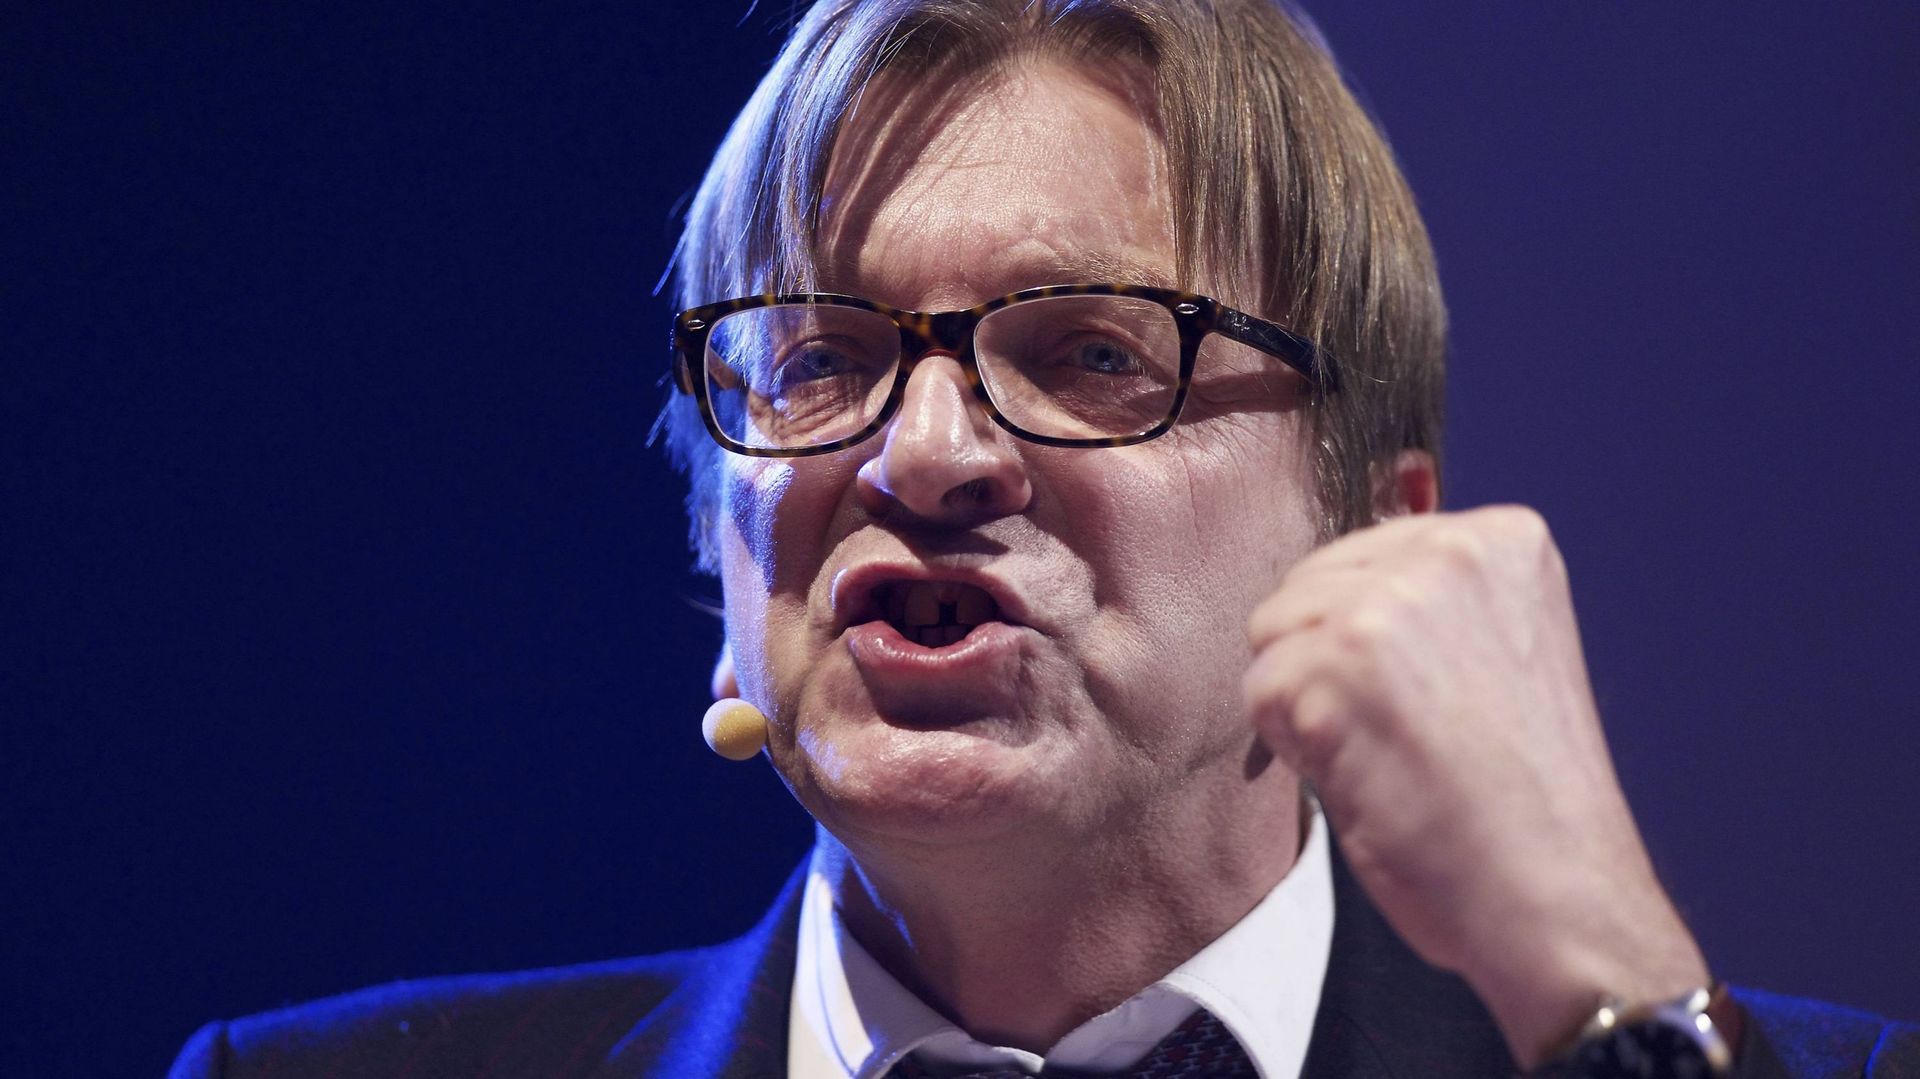 Lutte contre l'homophobie: Guy Verhofstadt critique un eurodéputé N-VA